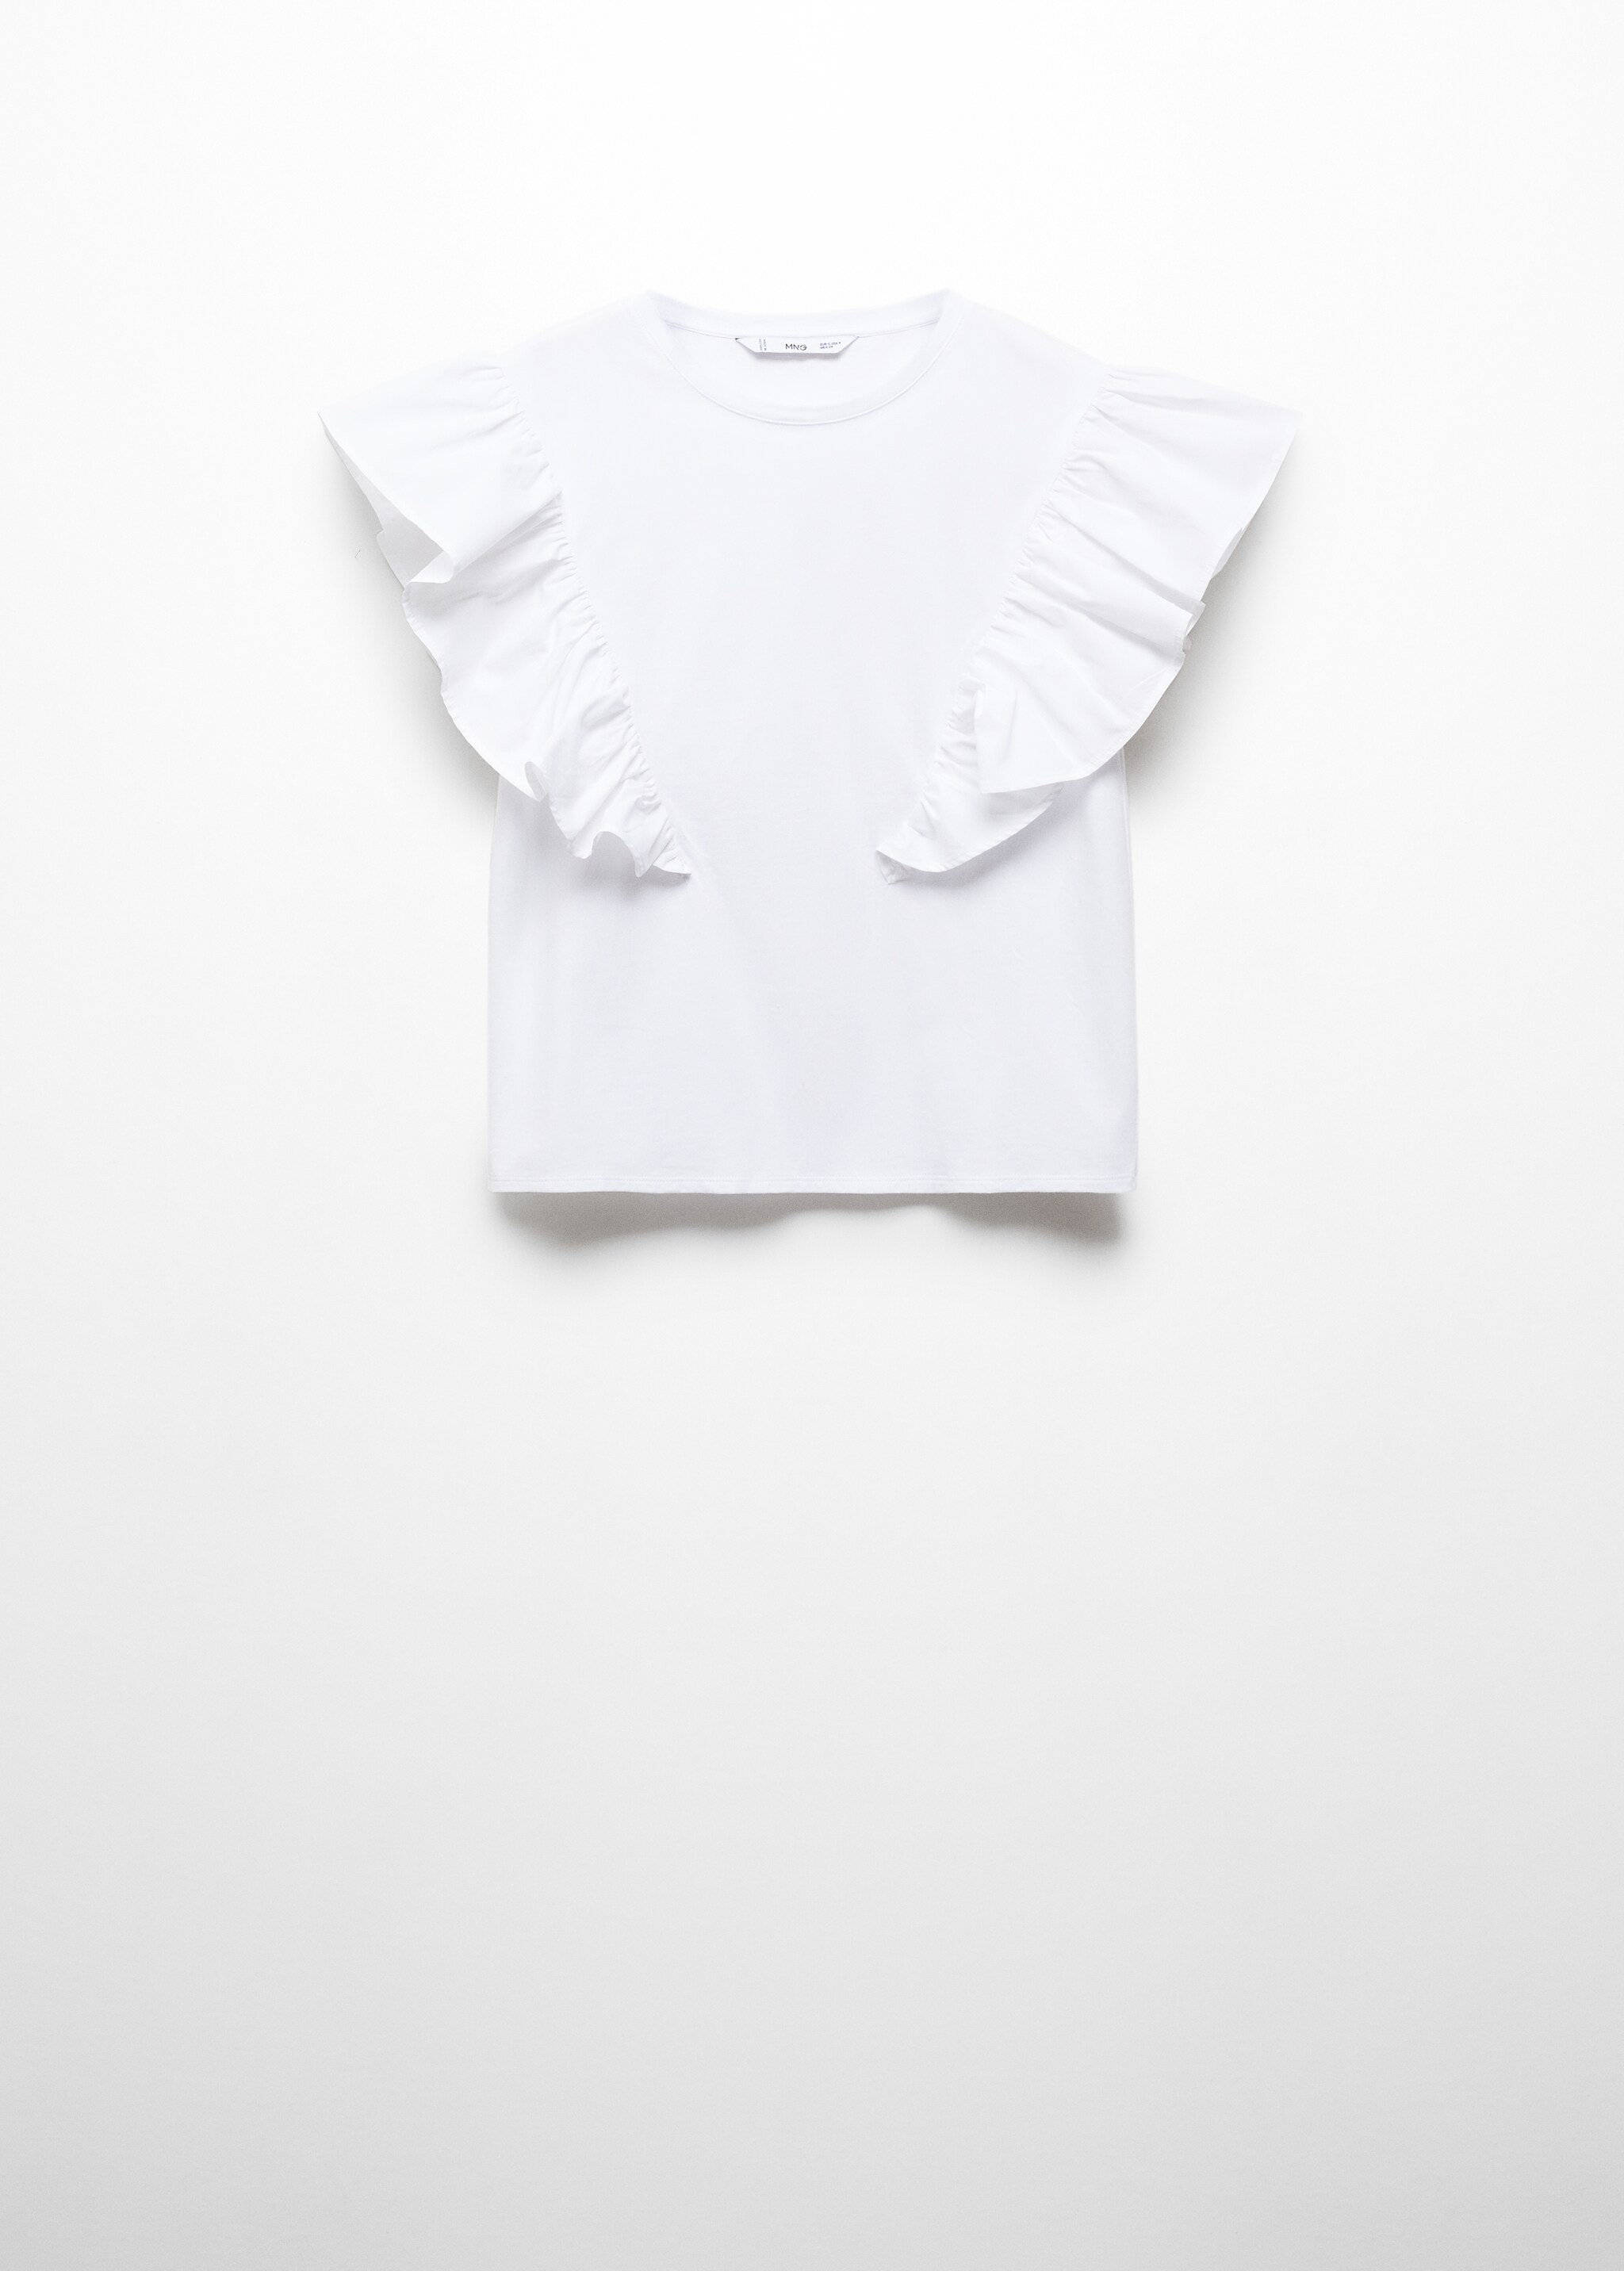 Camiseta 100% algodón volantes - Artículo sin modelo